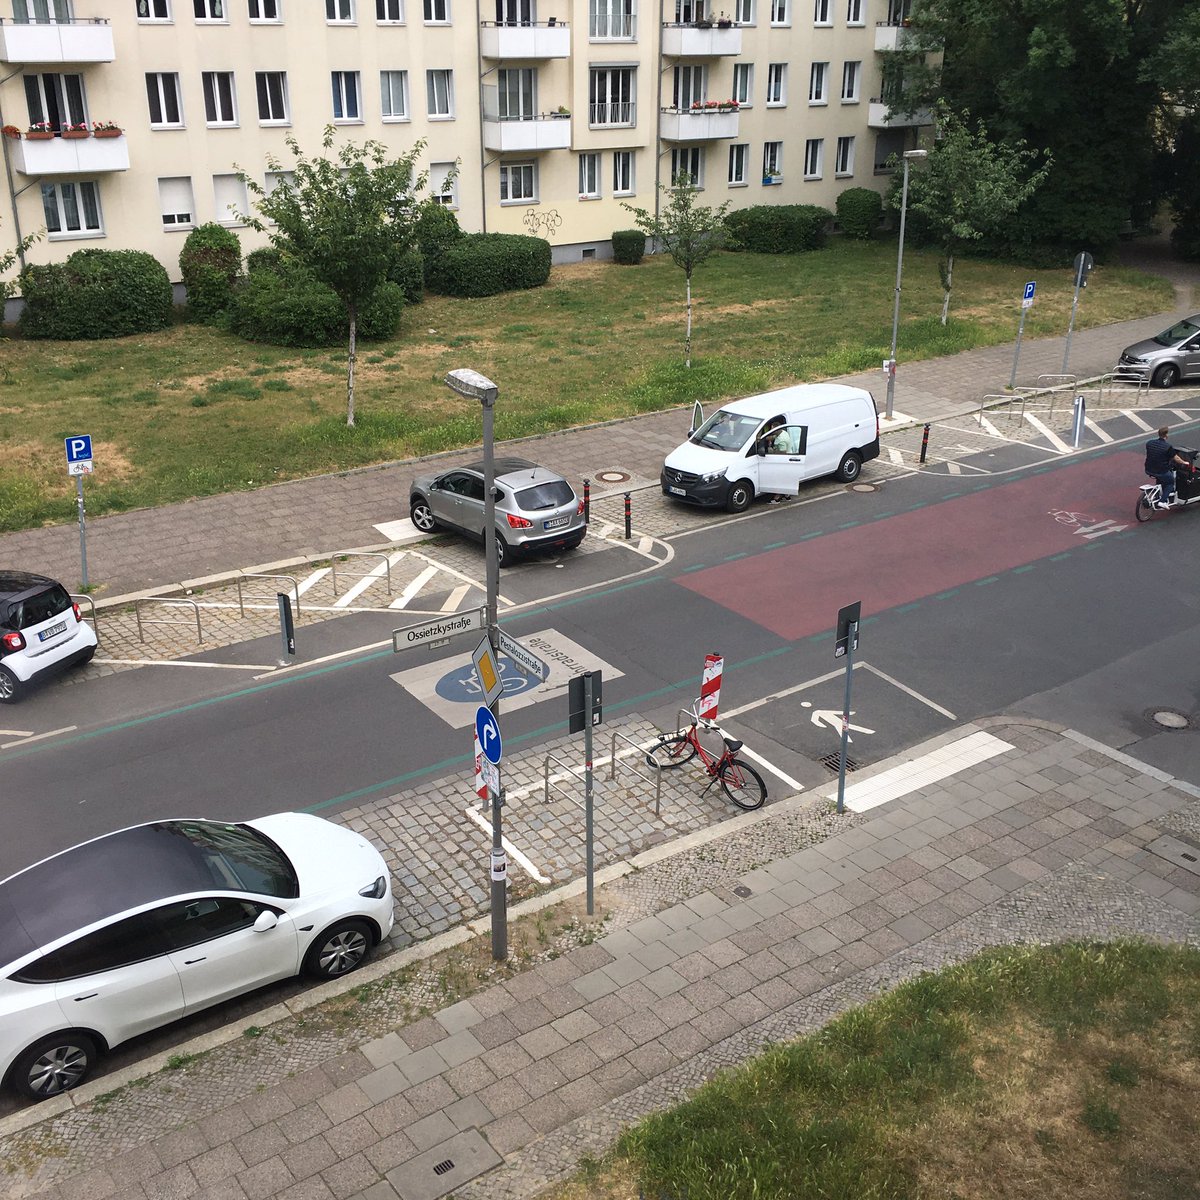 Weil das zu viel verlangt ist, auf der anderen Straßenseite zu parken. 🤬#NurMalEbenKurz #Fahrradstraße #Ossietzkystraße